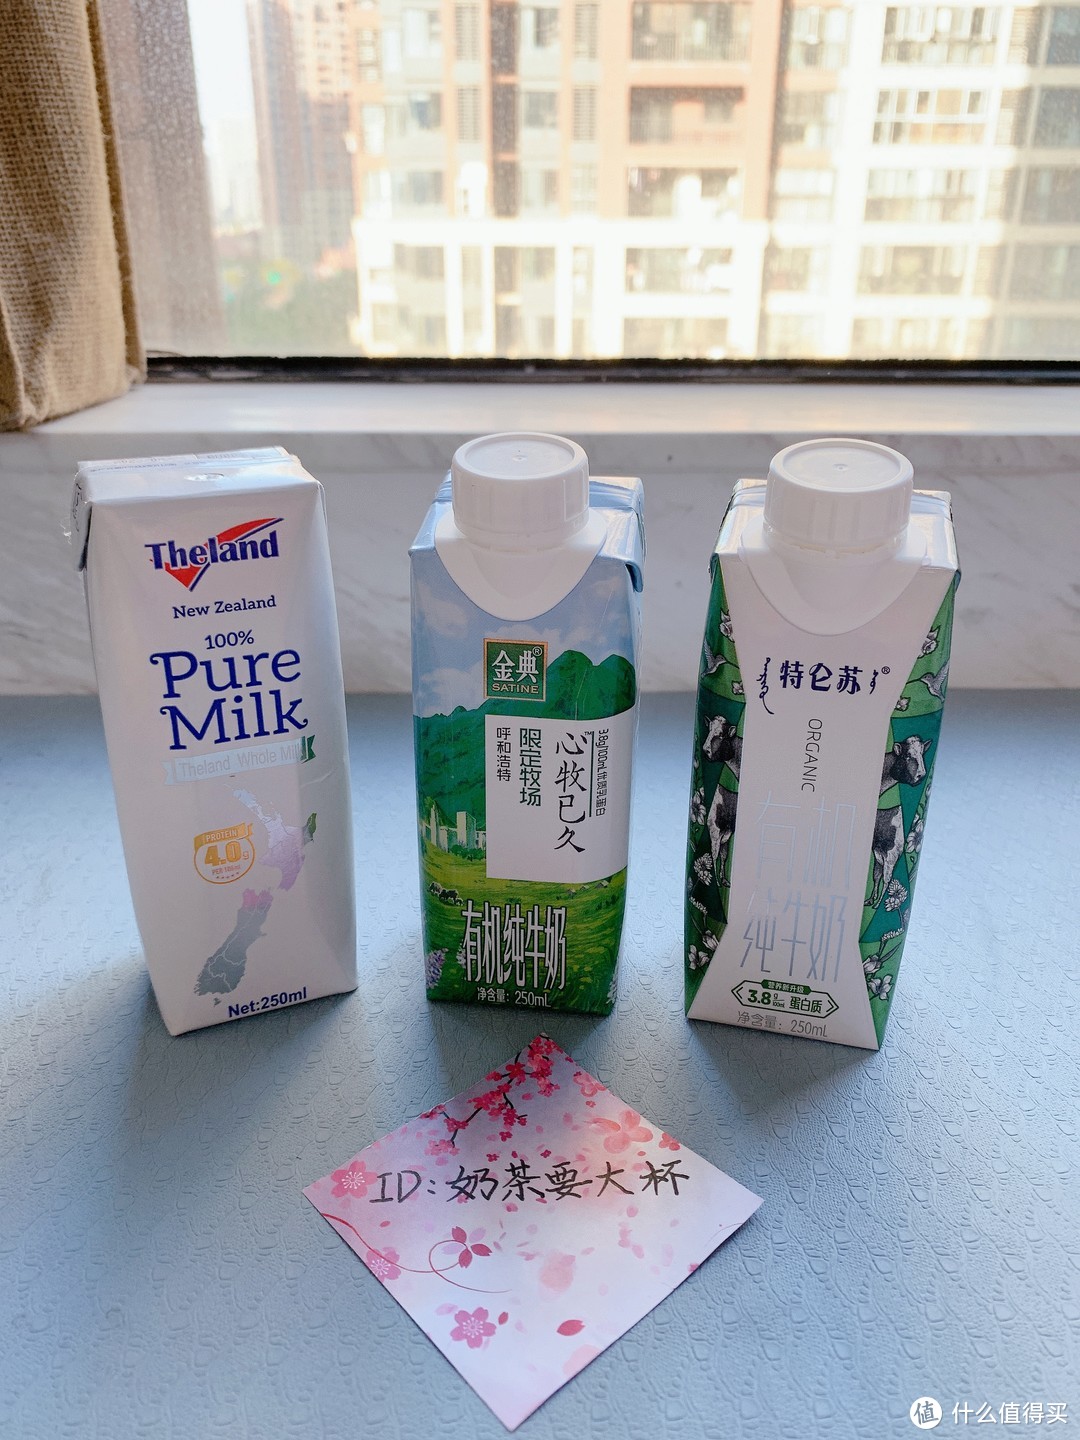 盒装牛奶到底按什么标准选，都是纯牛奶，是看价格、数据还是口碑